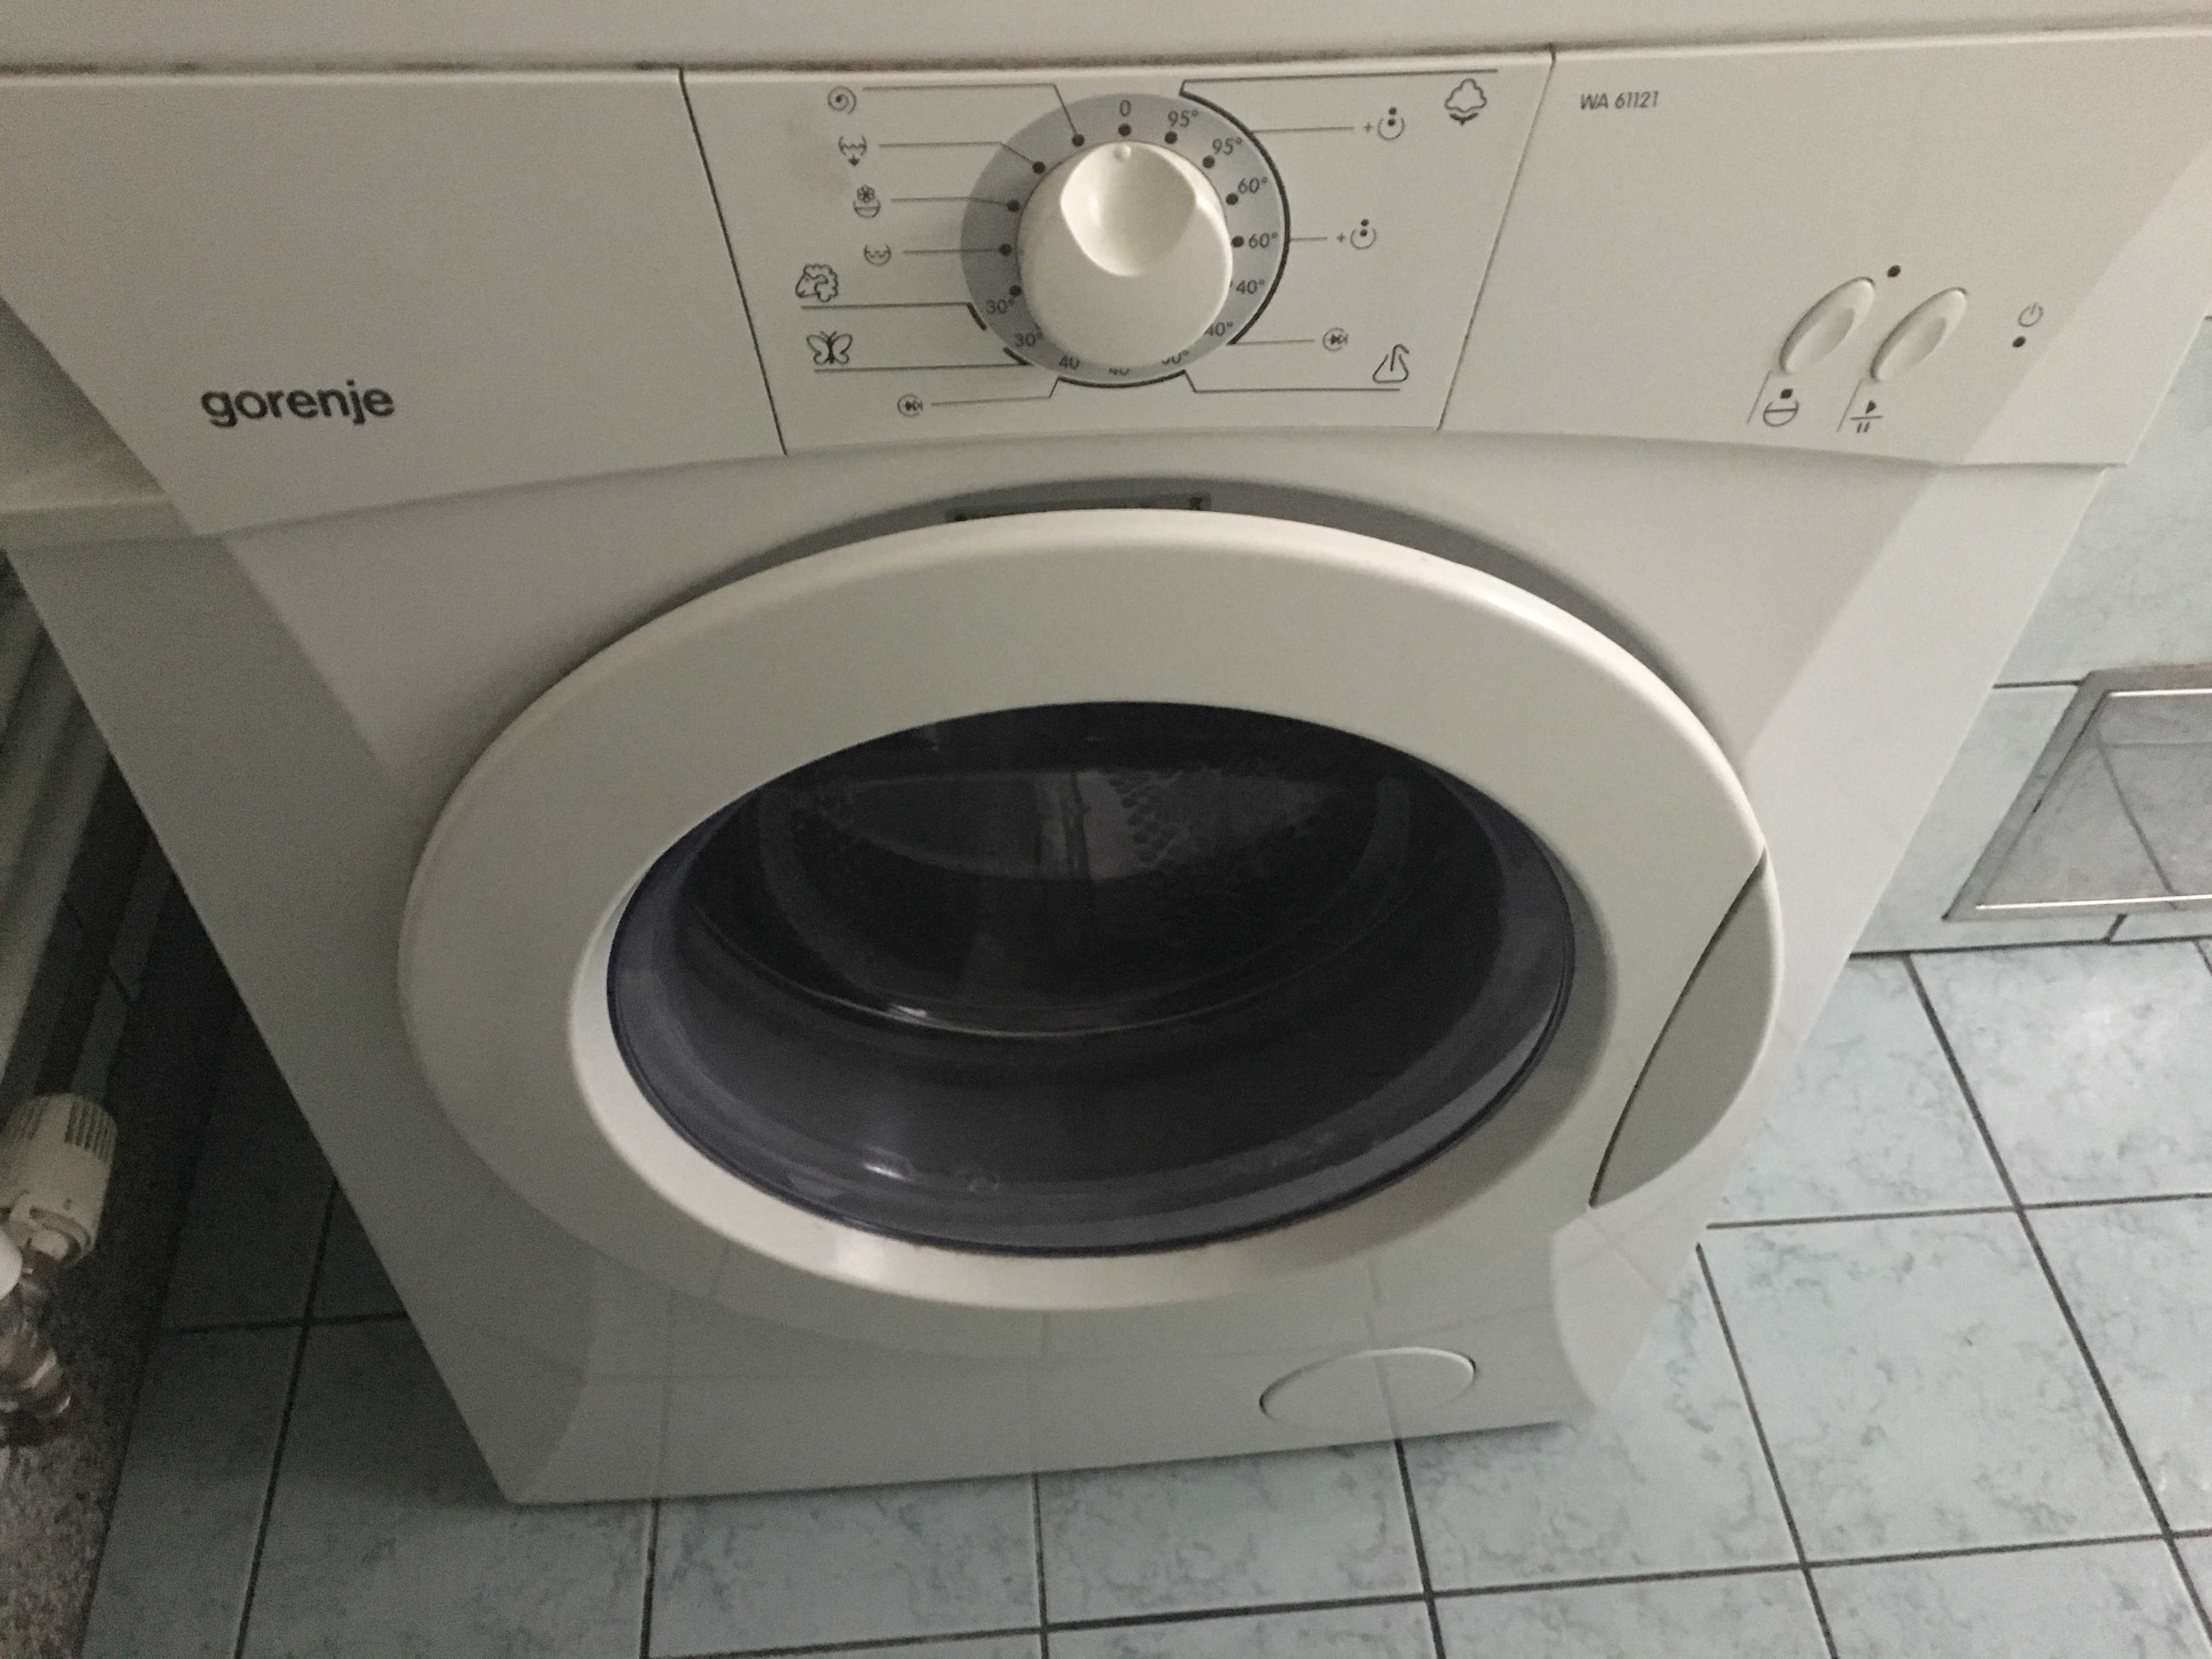 Risk analysis on laundry washing example